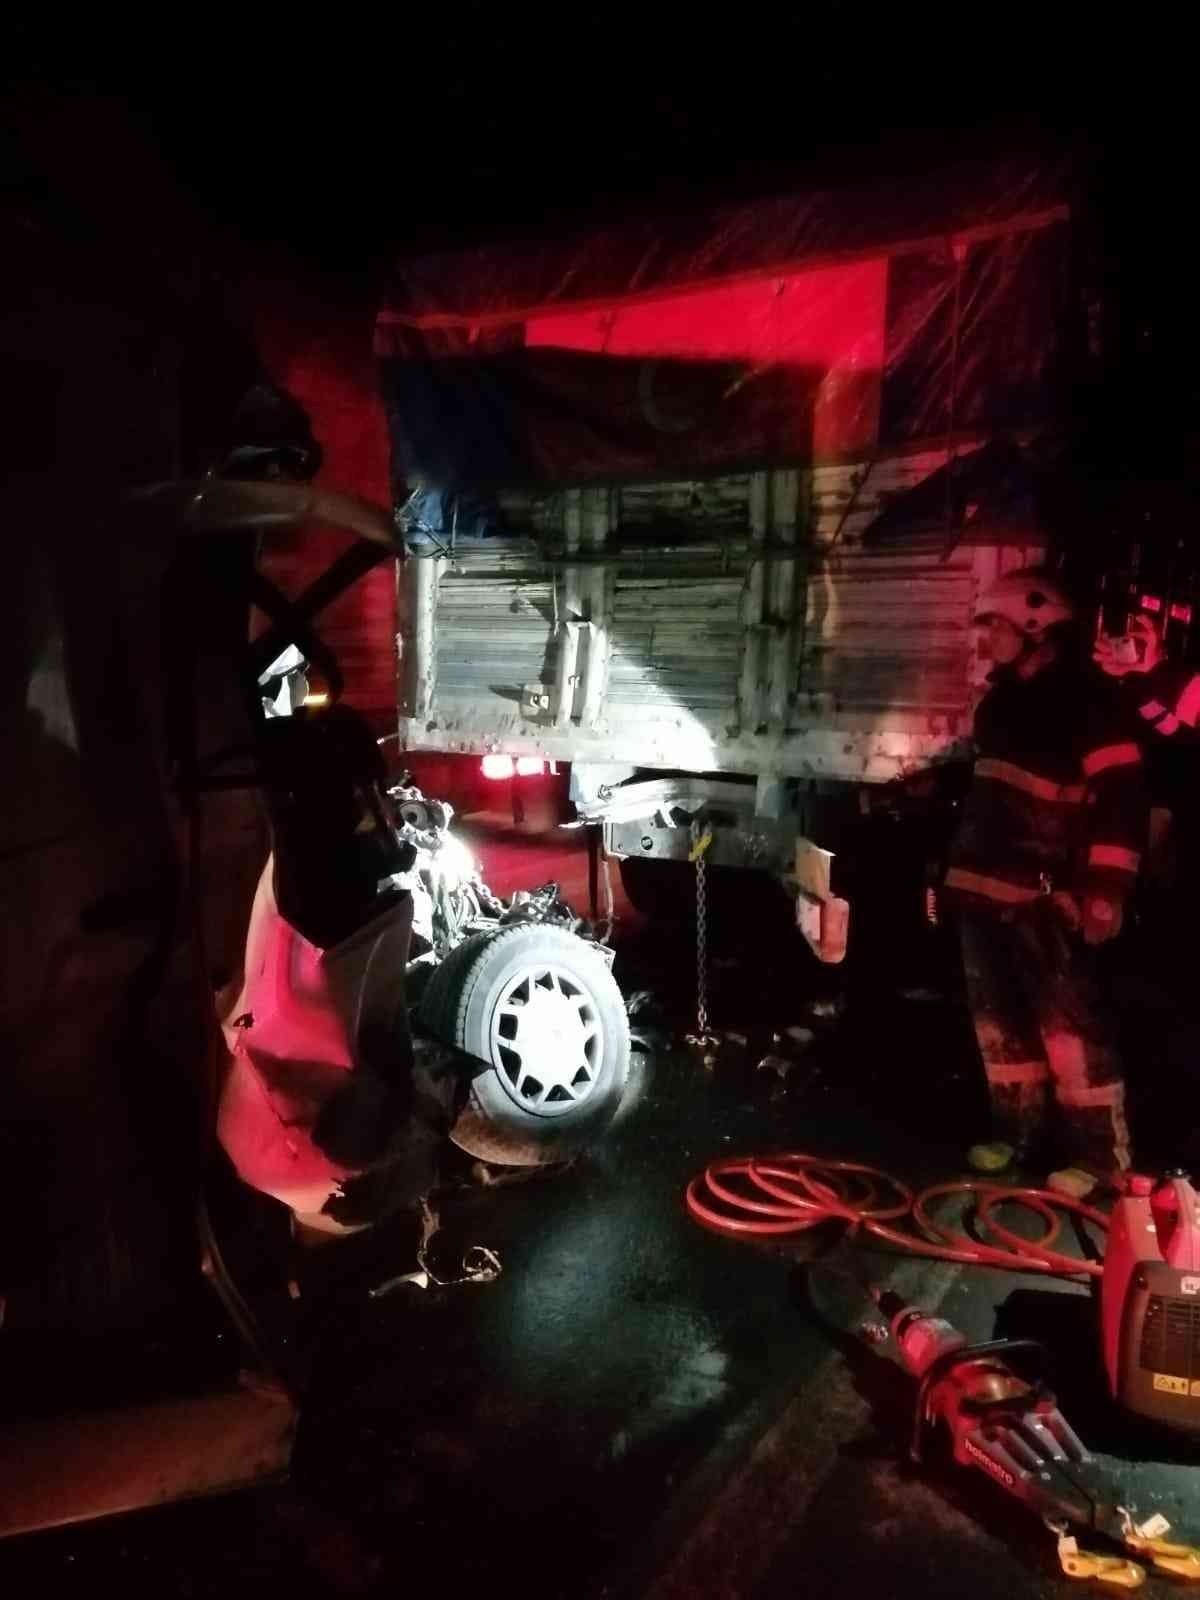 Kütahya’da minibüs kamyonla çarpıştı: 1 ölü #kutahya